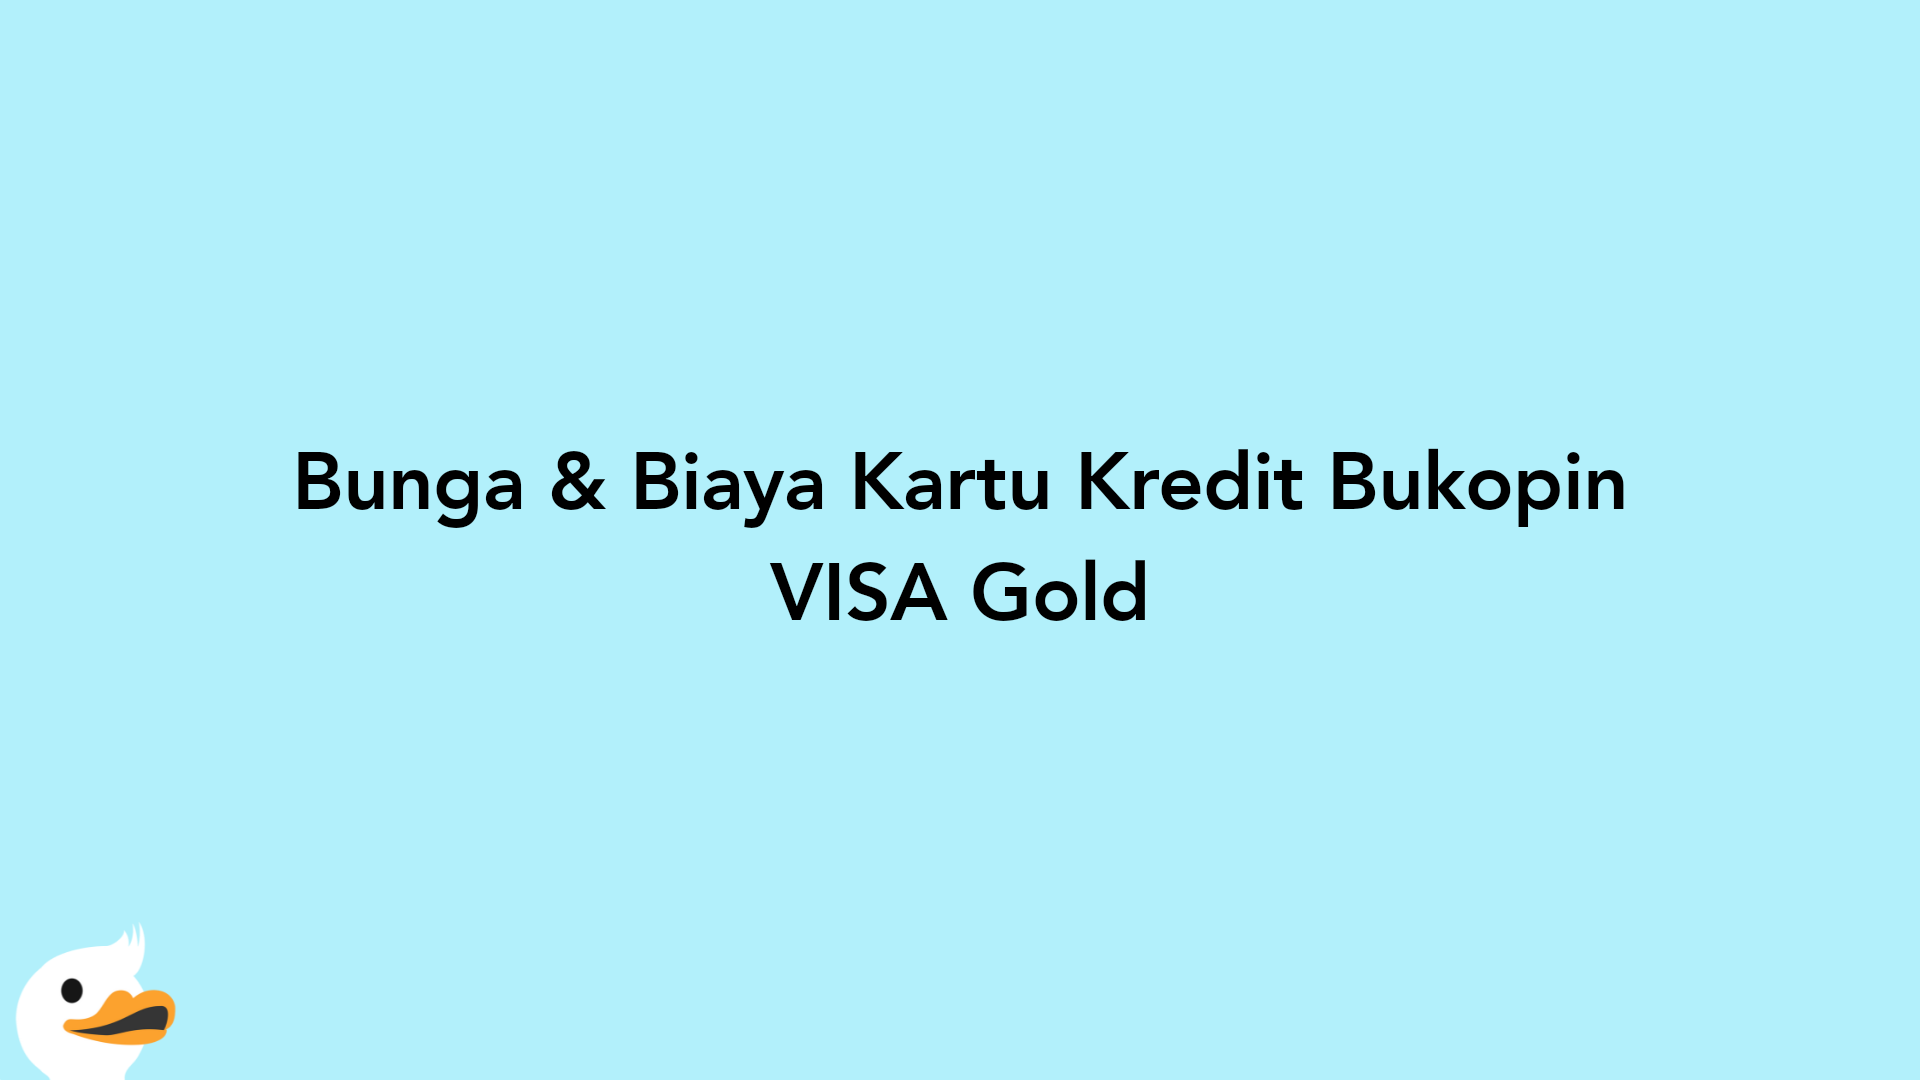 Bunga & Biaya Kartu Kredit Bukopin VISA Gold